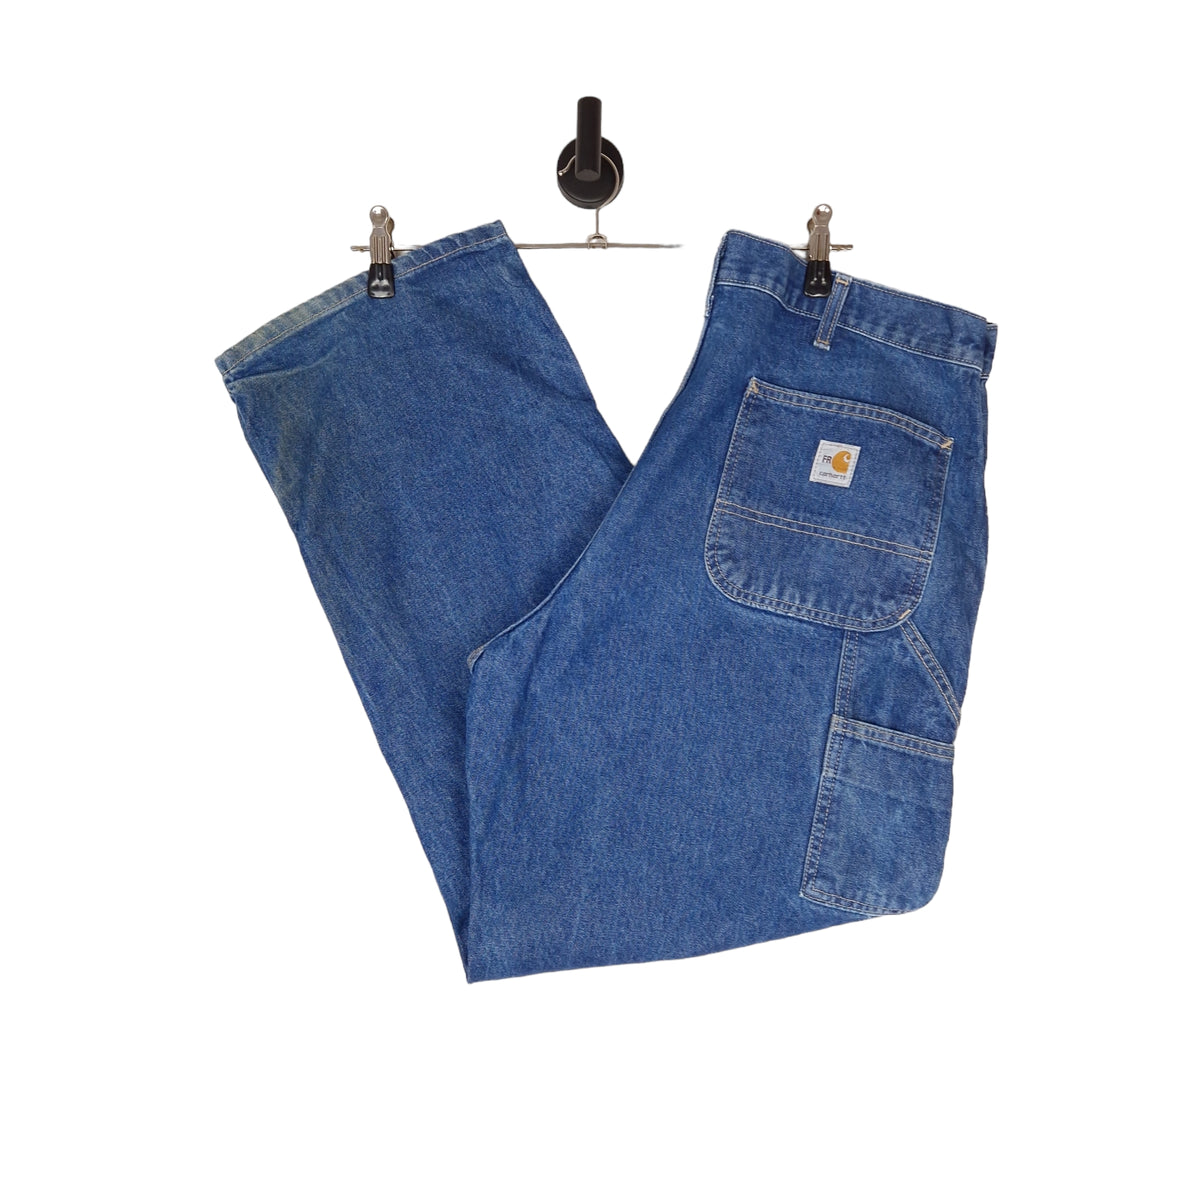 Carhartt FR Denim Jeans - Size W38 L32